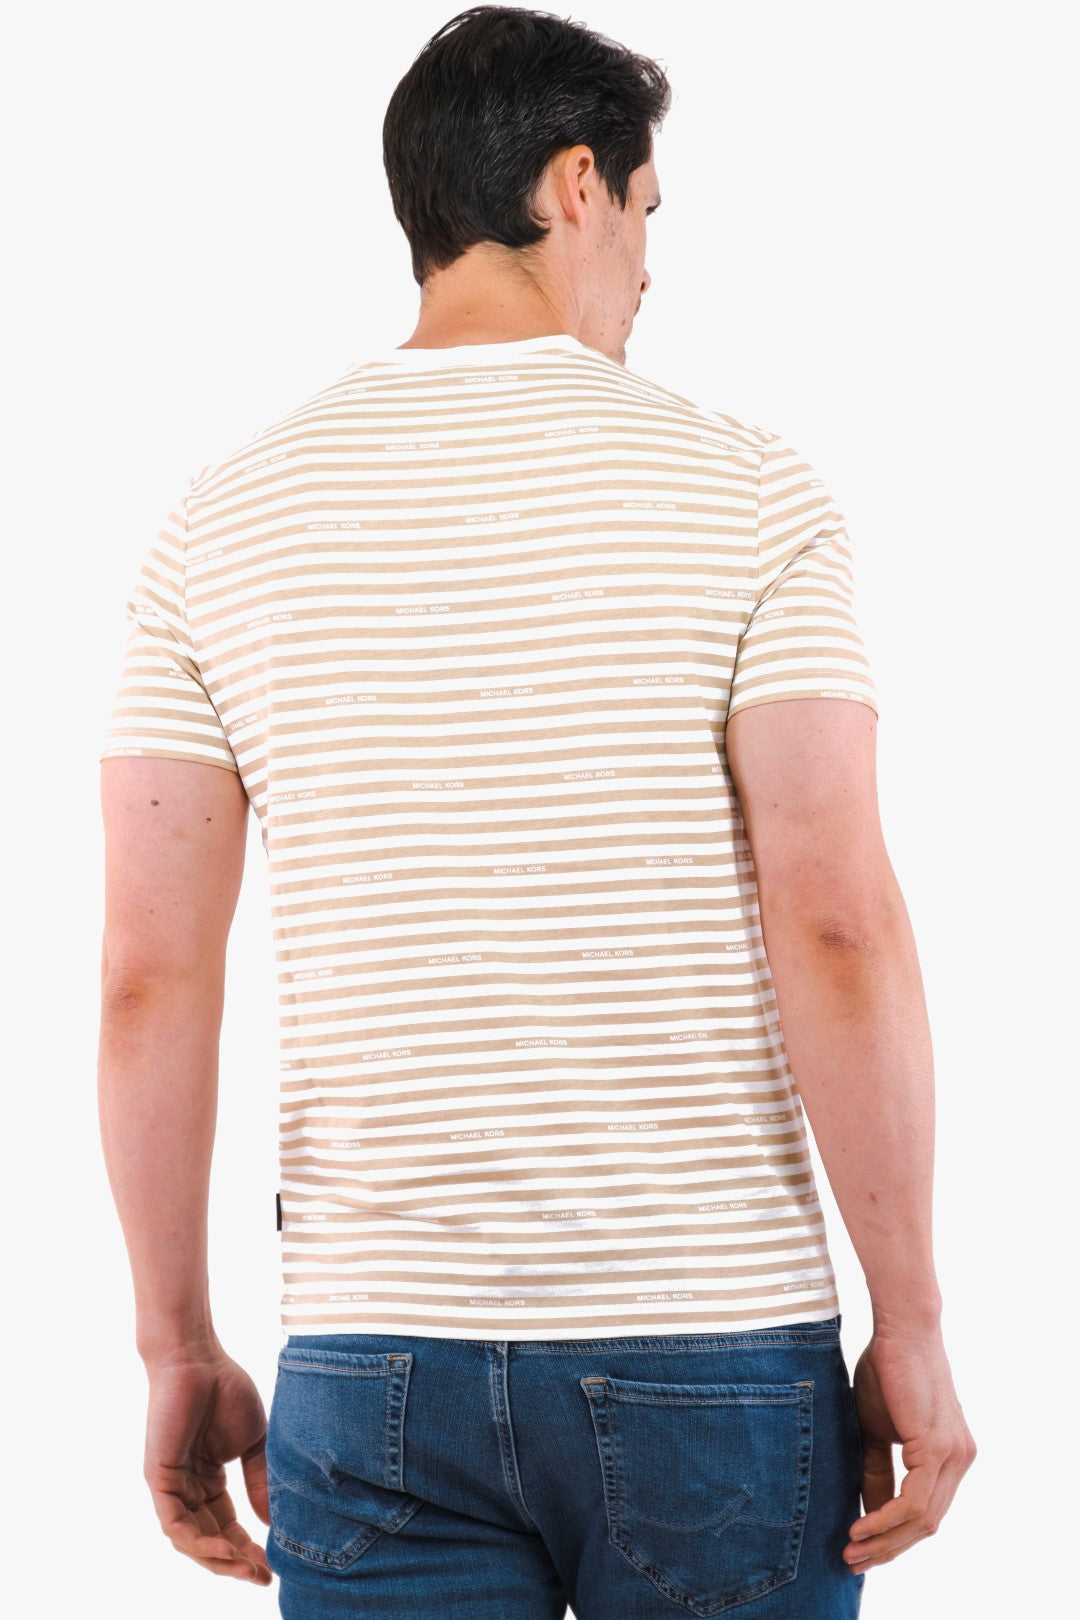 T-Shirt Michael Kors De Couleur Beige Homme